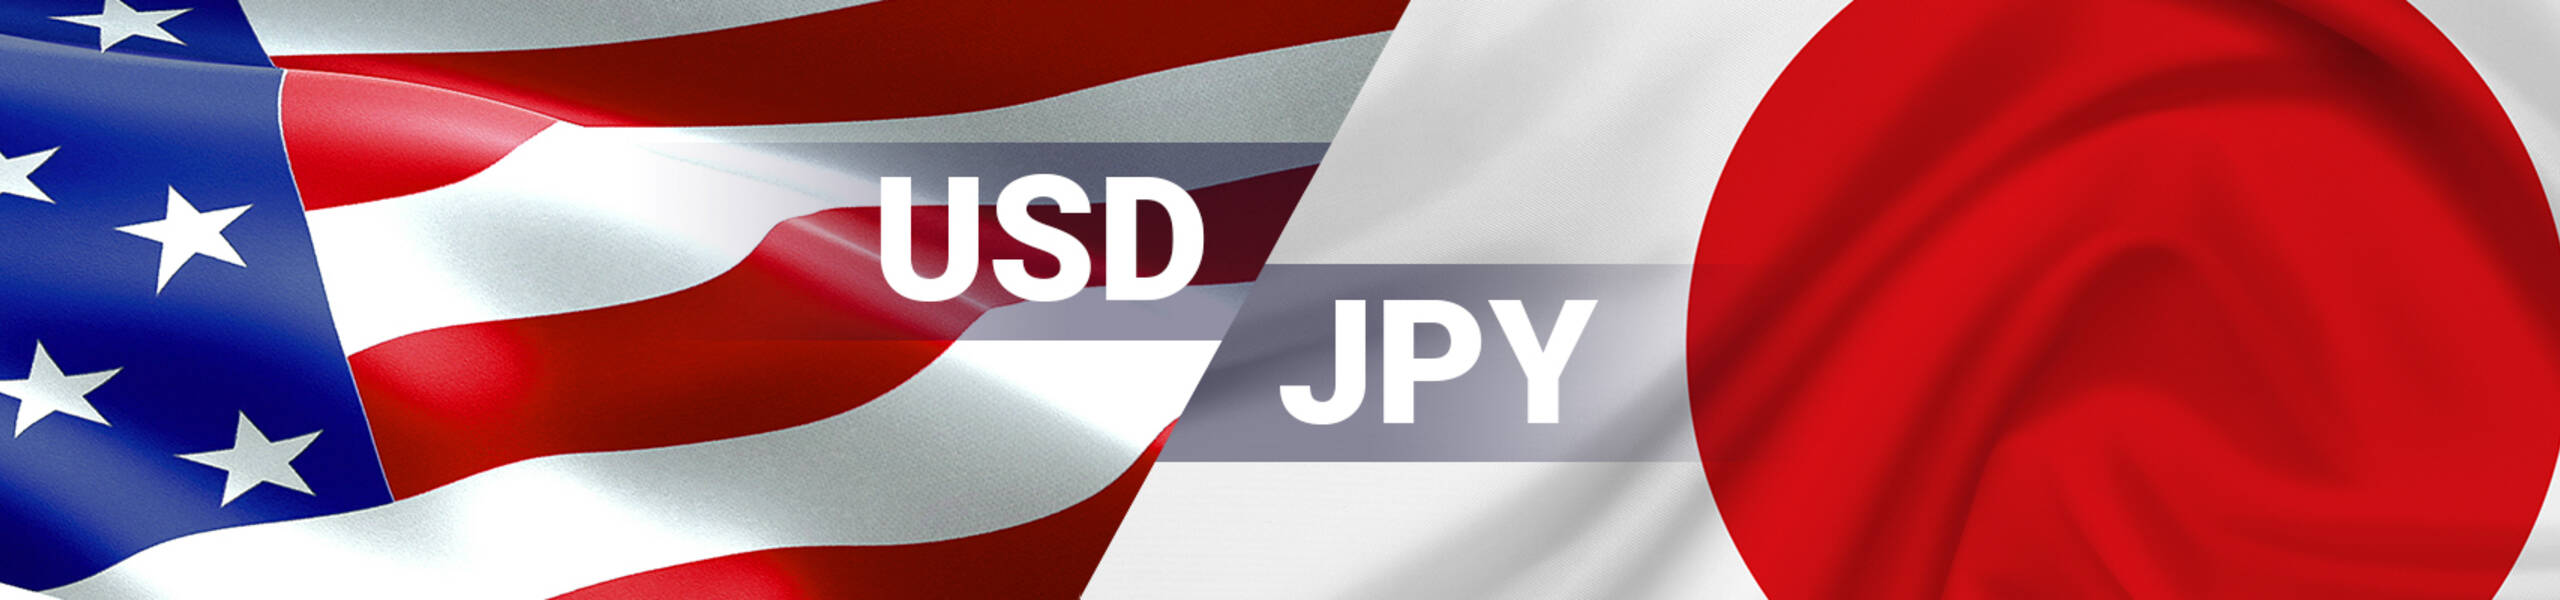 USD/JPY: sebuah penurunan lebih lanjut tidak dikesampingkan